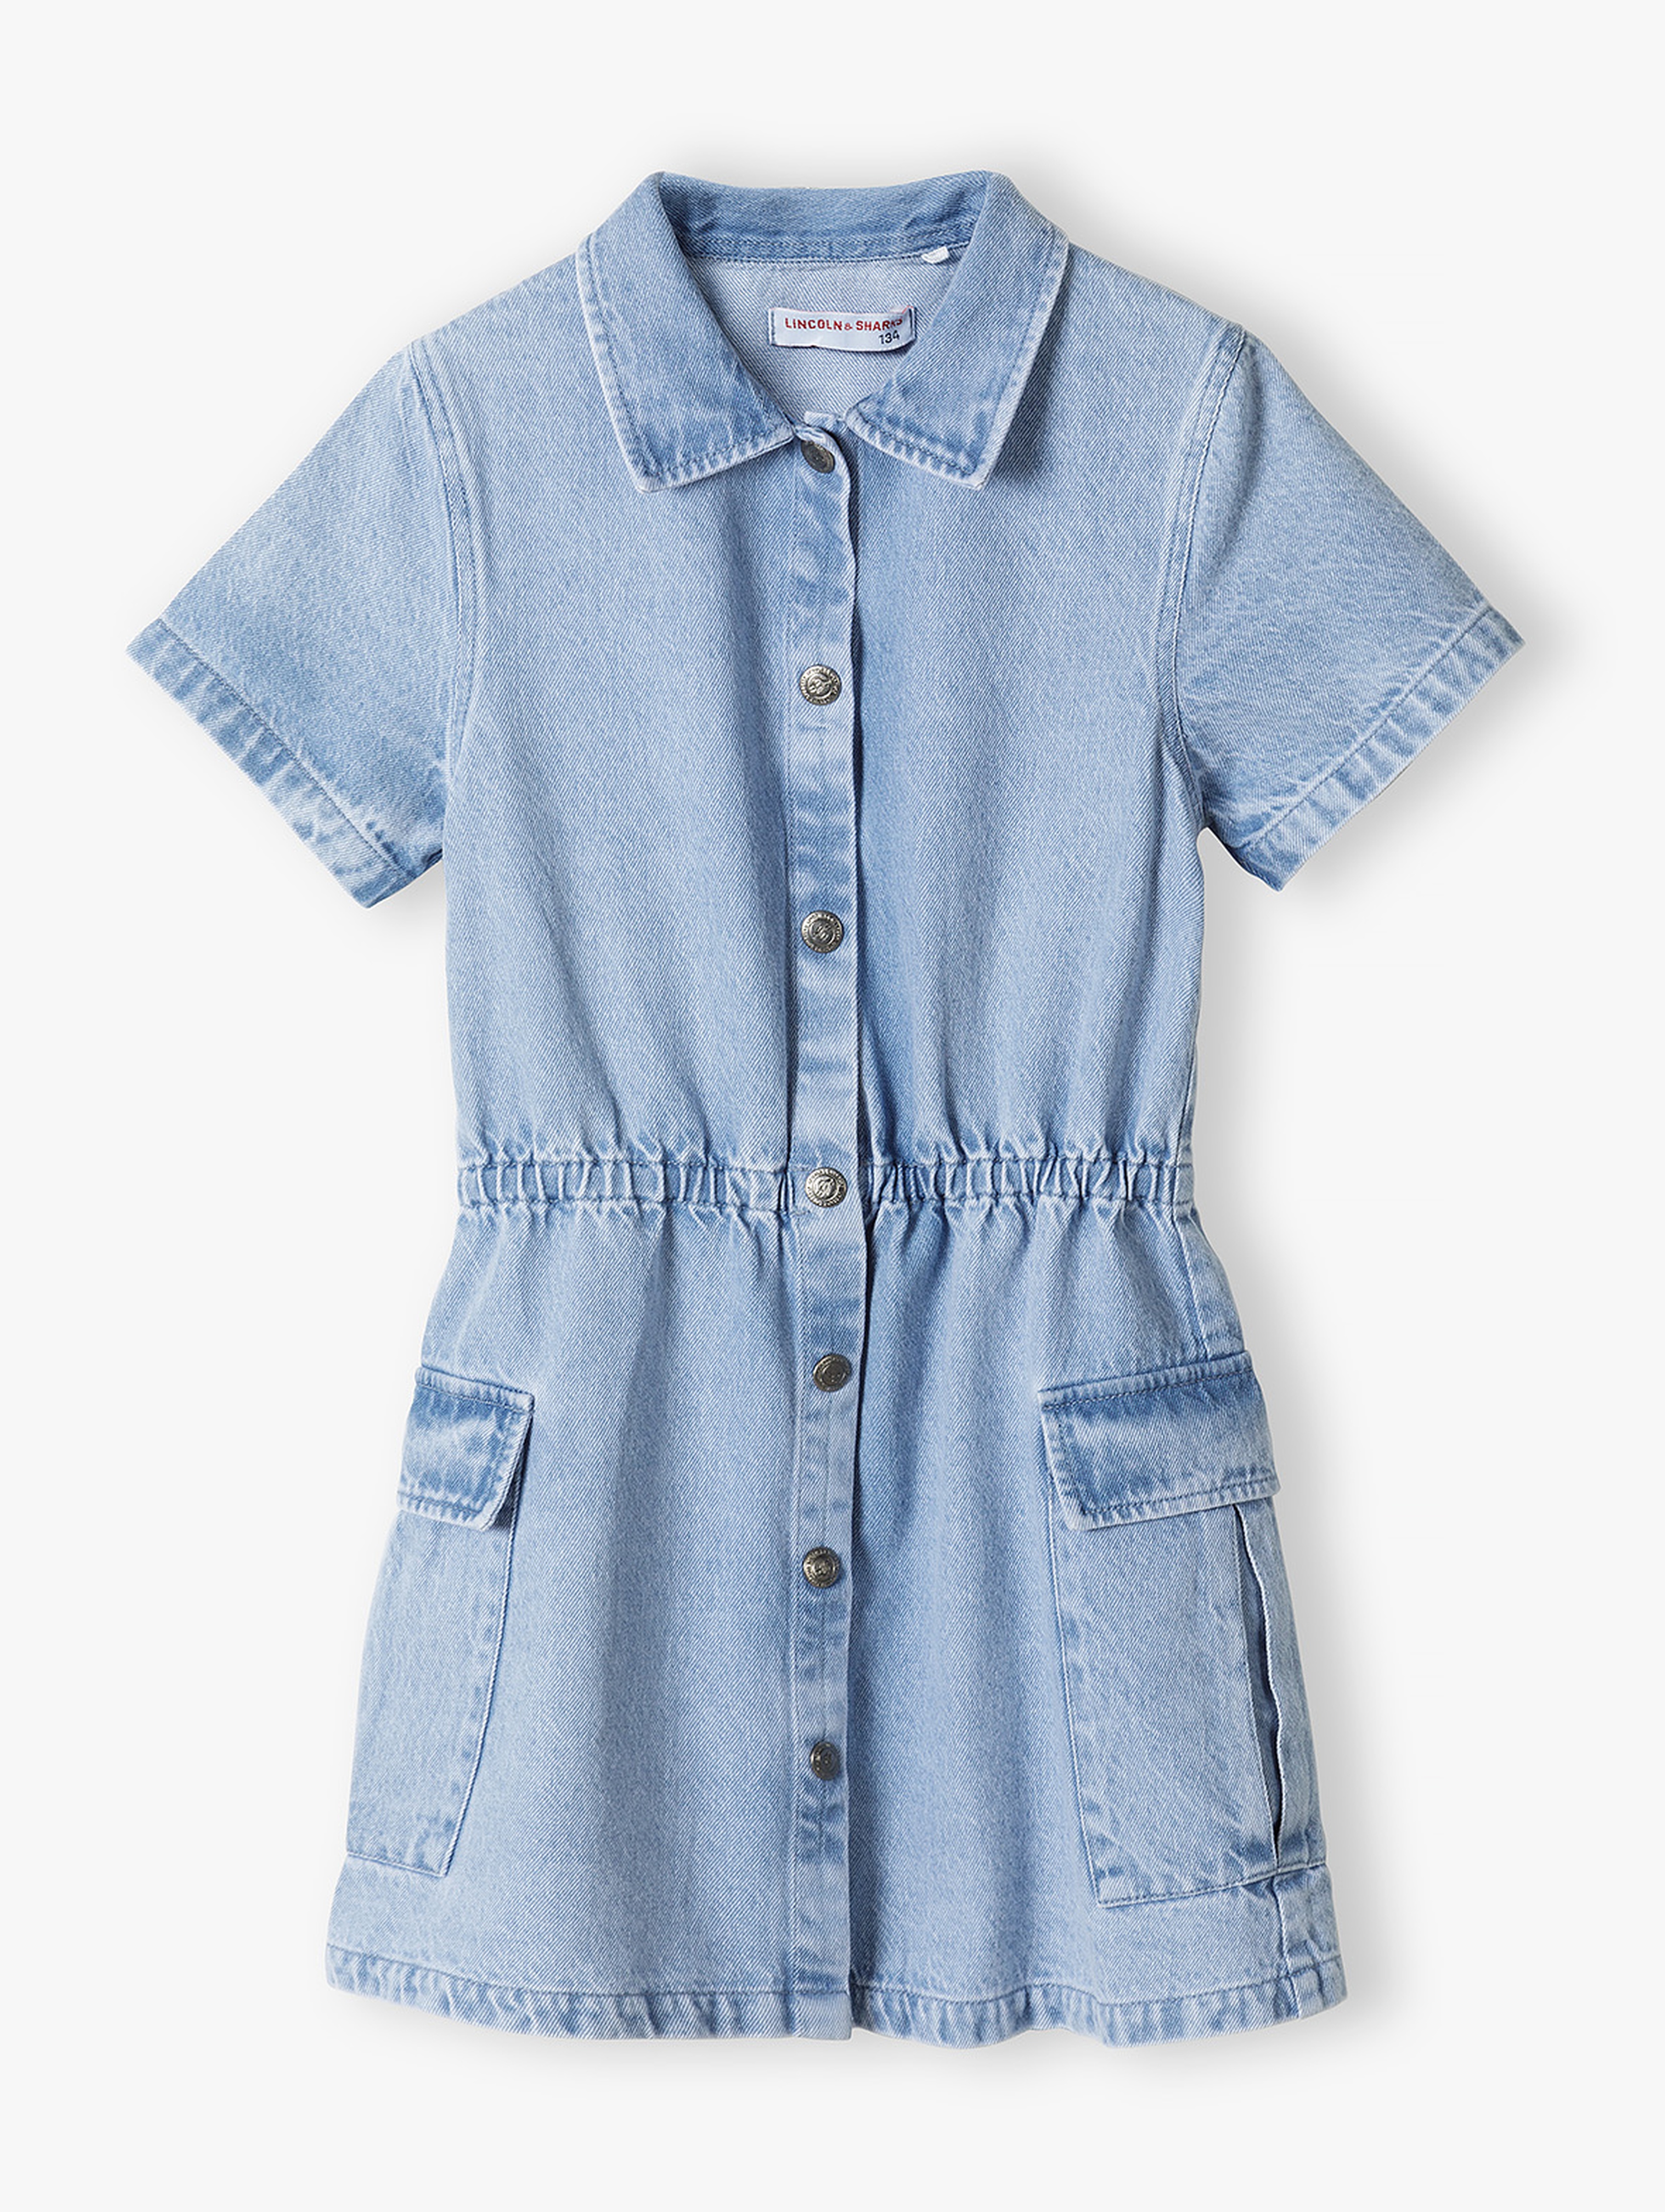 Jeansowa sukienka dla dziewczynki z krótkim rękawem - niebieska - Lincoln&Sharks